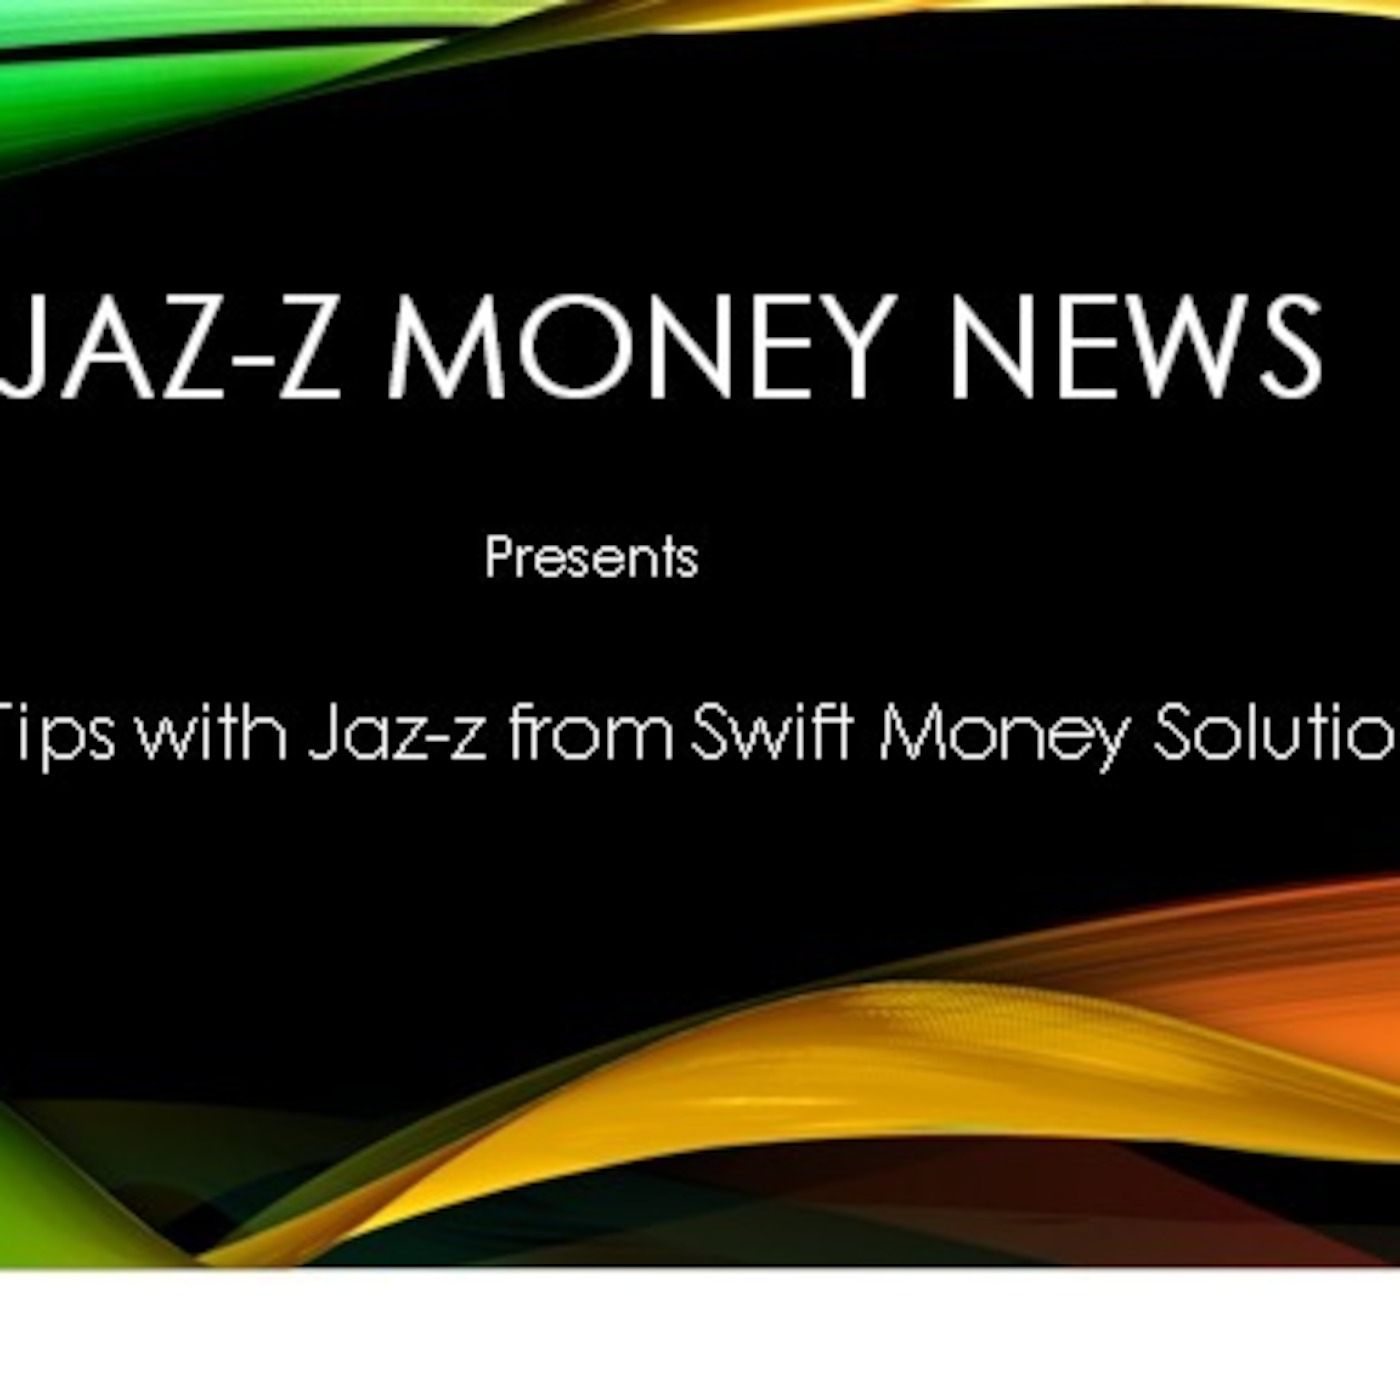 JAZ-Z & WJAZ-Z Money Empowering Tip #10